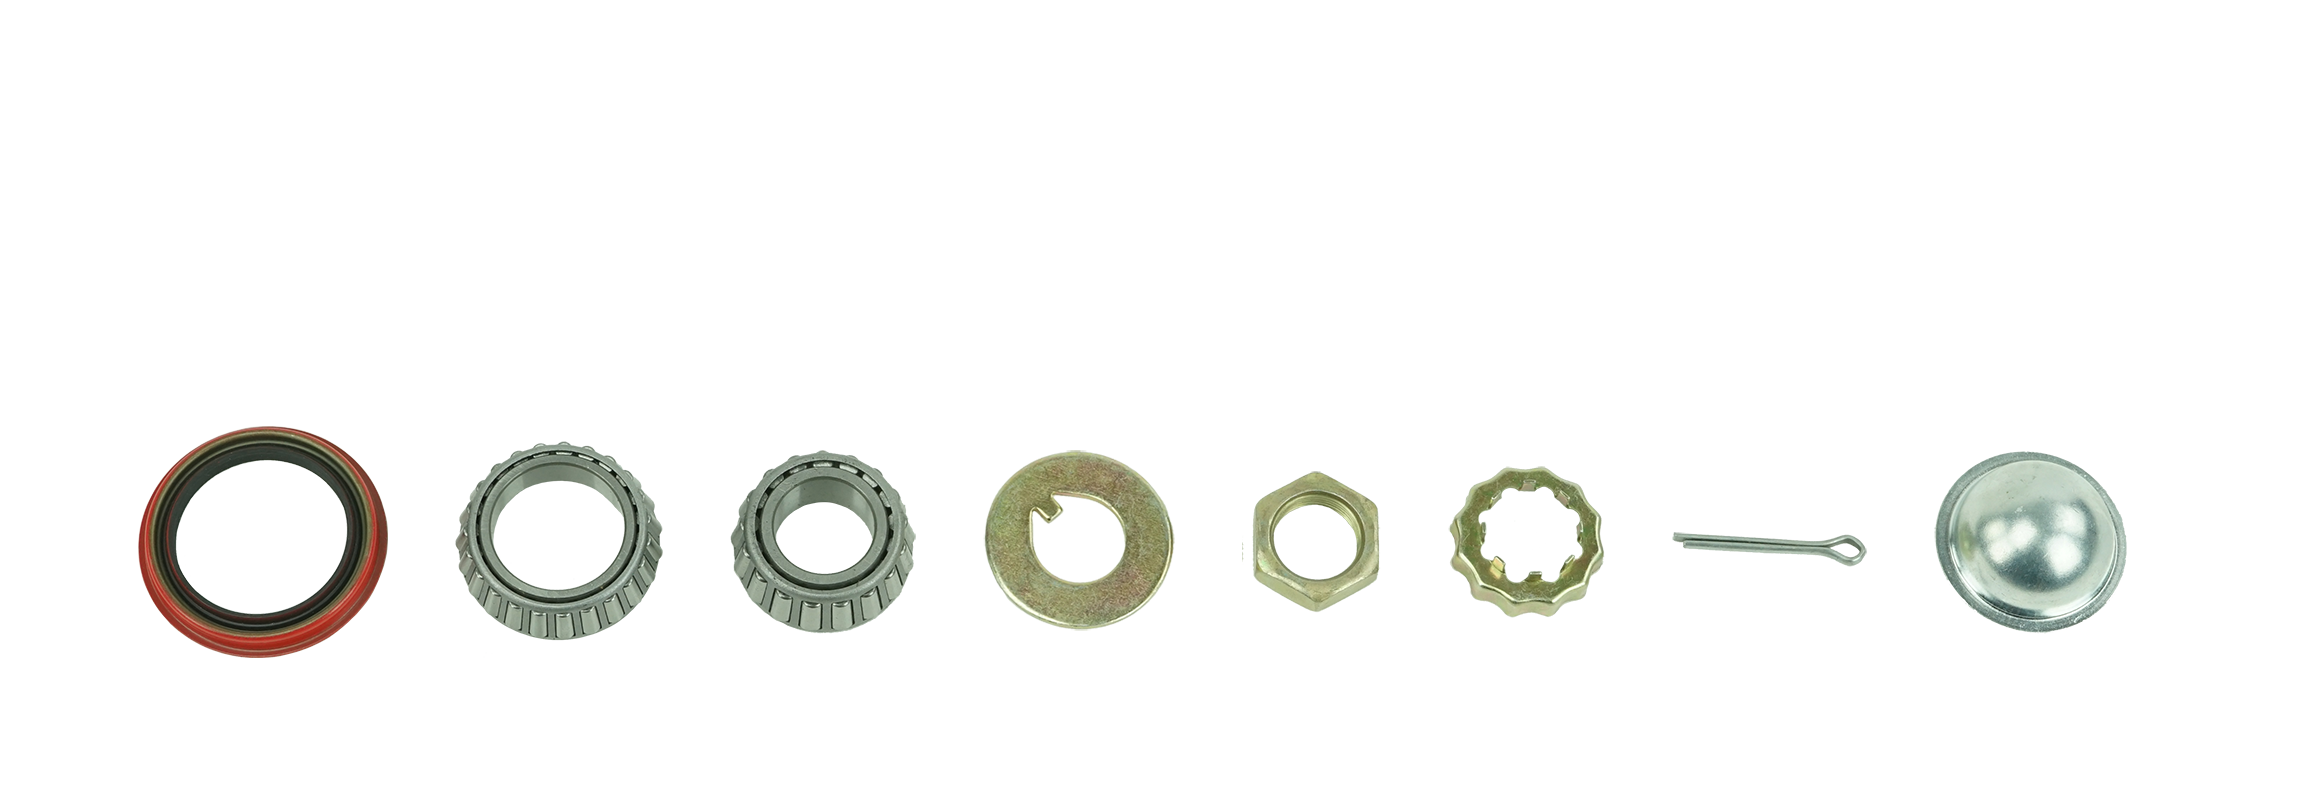 bearing-set-label